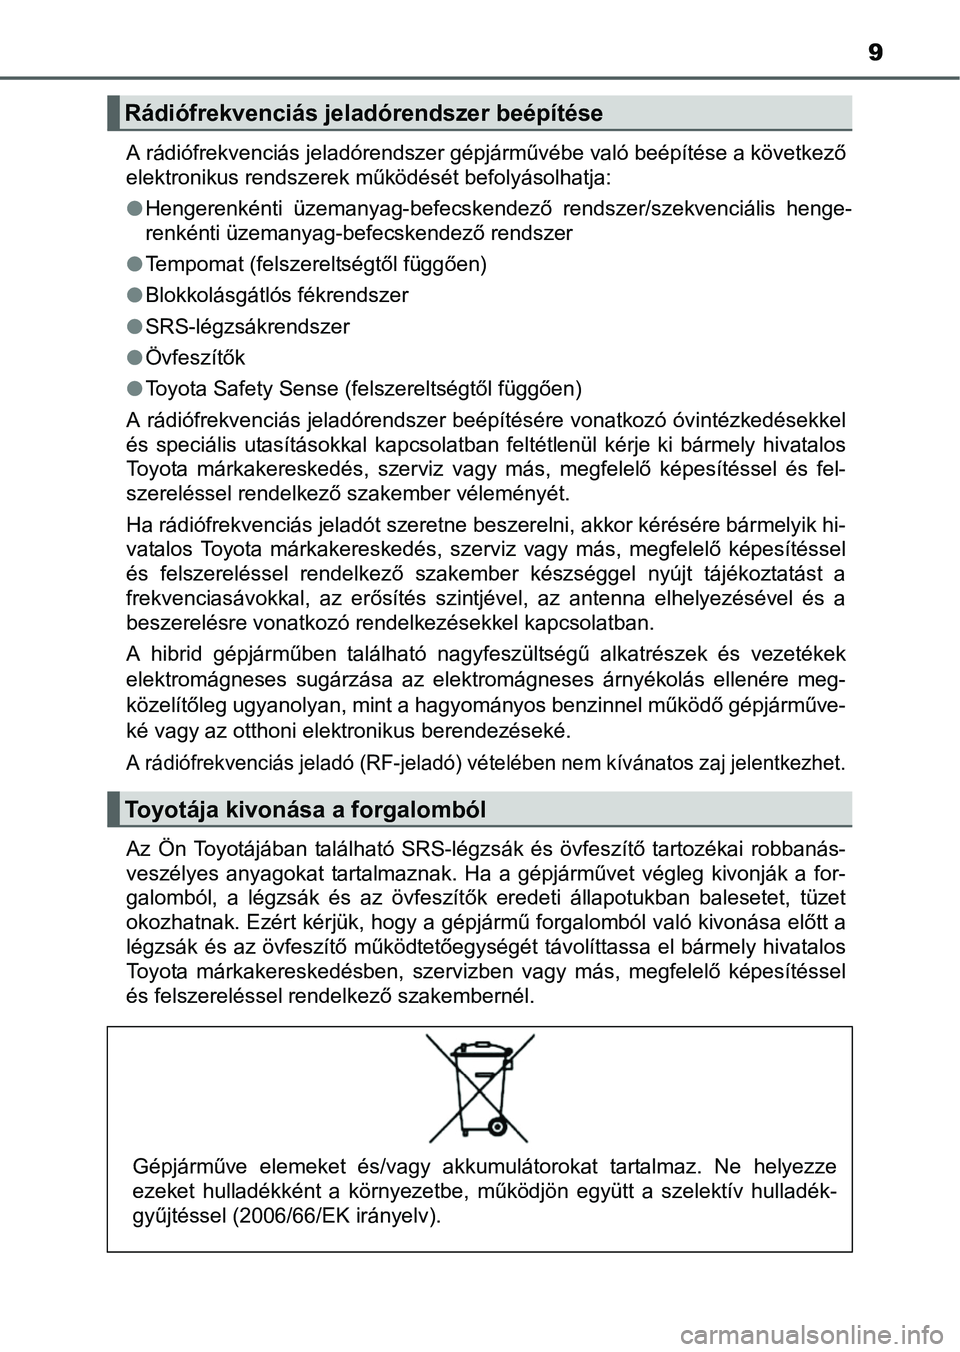 TOYOTA AURIS HYBRID 2016  Kezelési útmutató (in Hungarian) 9
A rádiófrekvenciás jeladórendszer gépjárművébe való beépítése a következő
elektronikus rendszerek működését befolyásolhatja:
Hengerenkénti üzemanyag-befecskendező rendszer/s